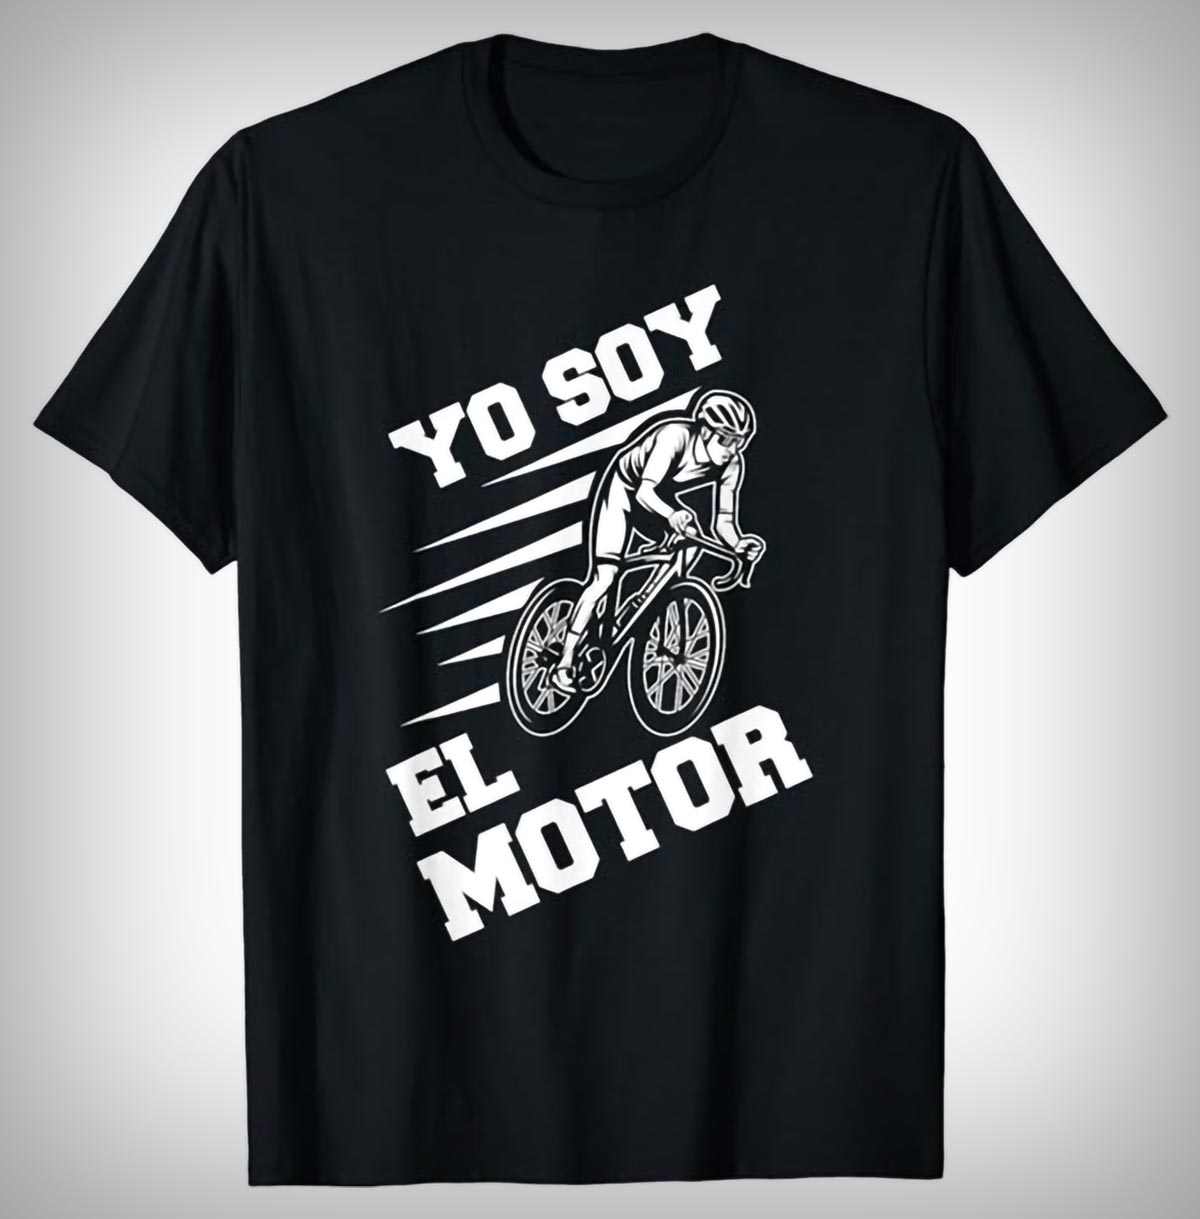 Diez camisetas de diseño divertido ideales para regalar a un ciclista